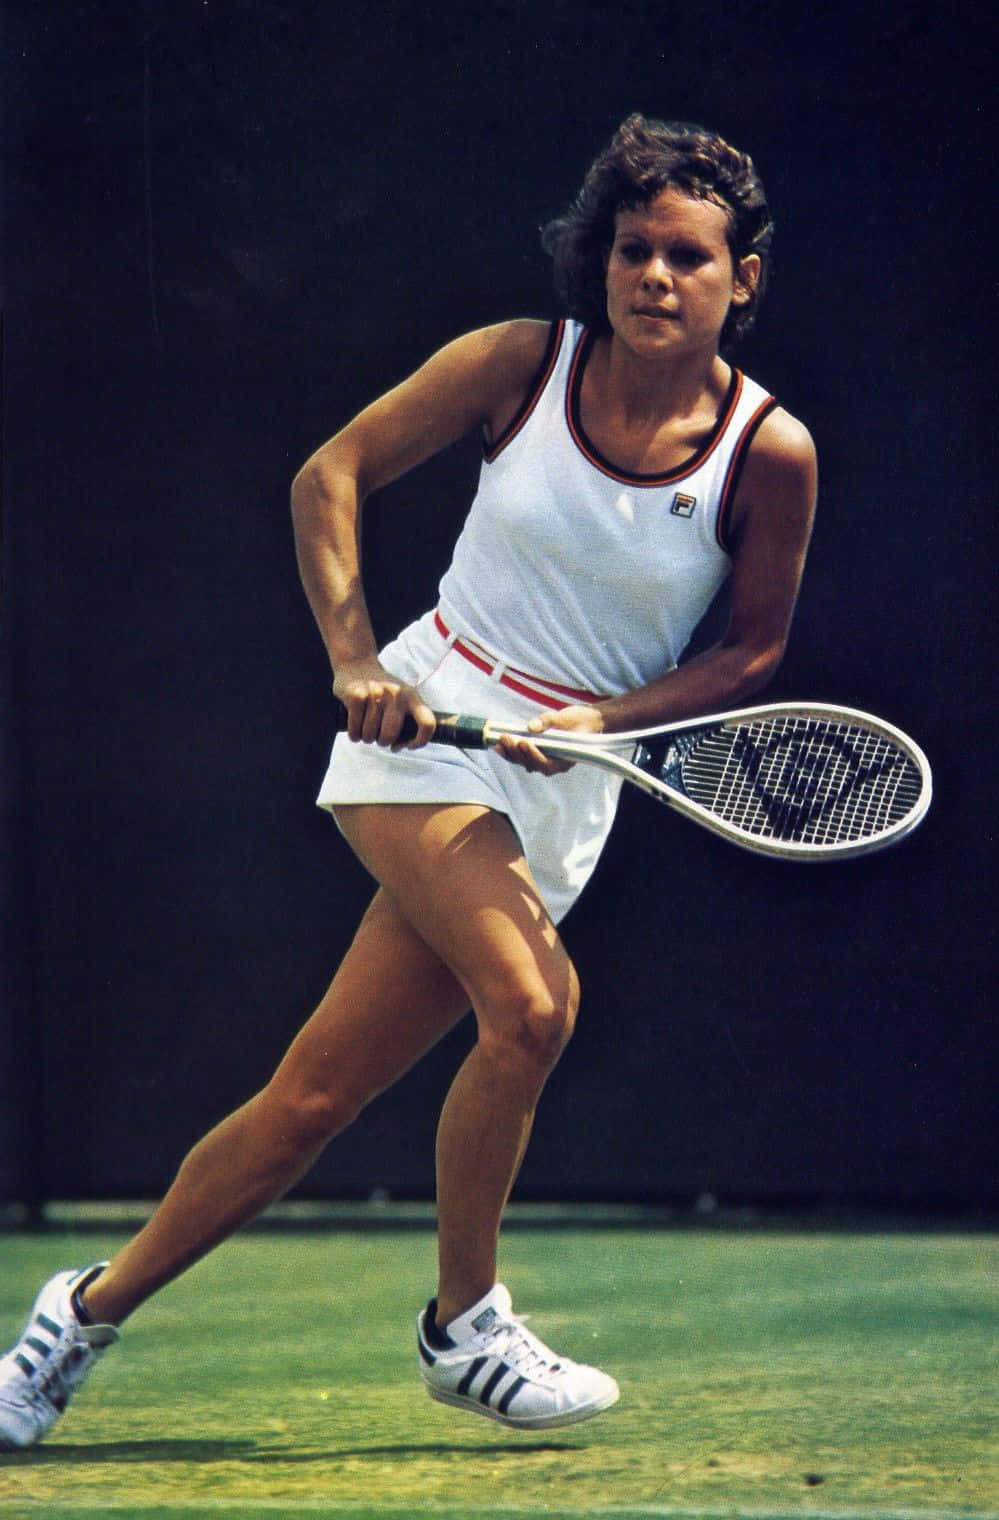 Portræt af tennisspiller Evonne Goolagong Cawley Wallpaper